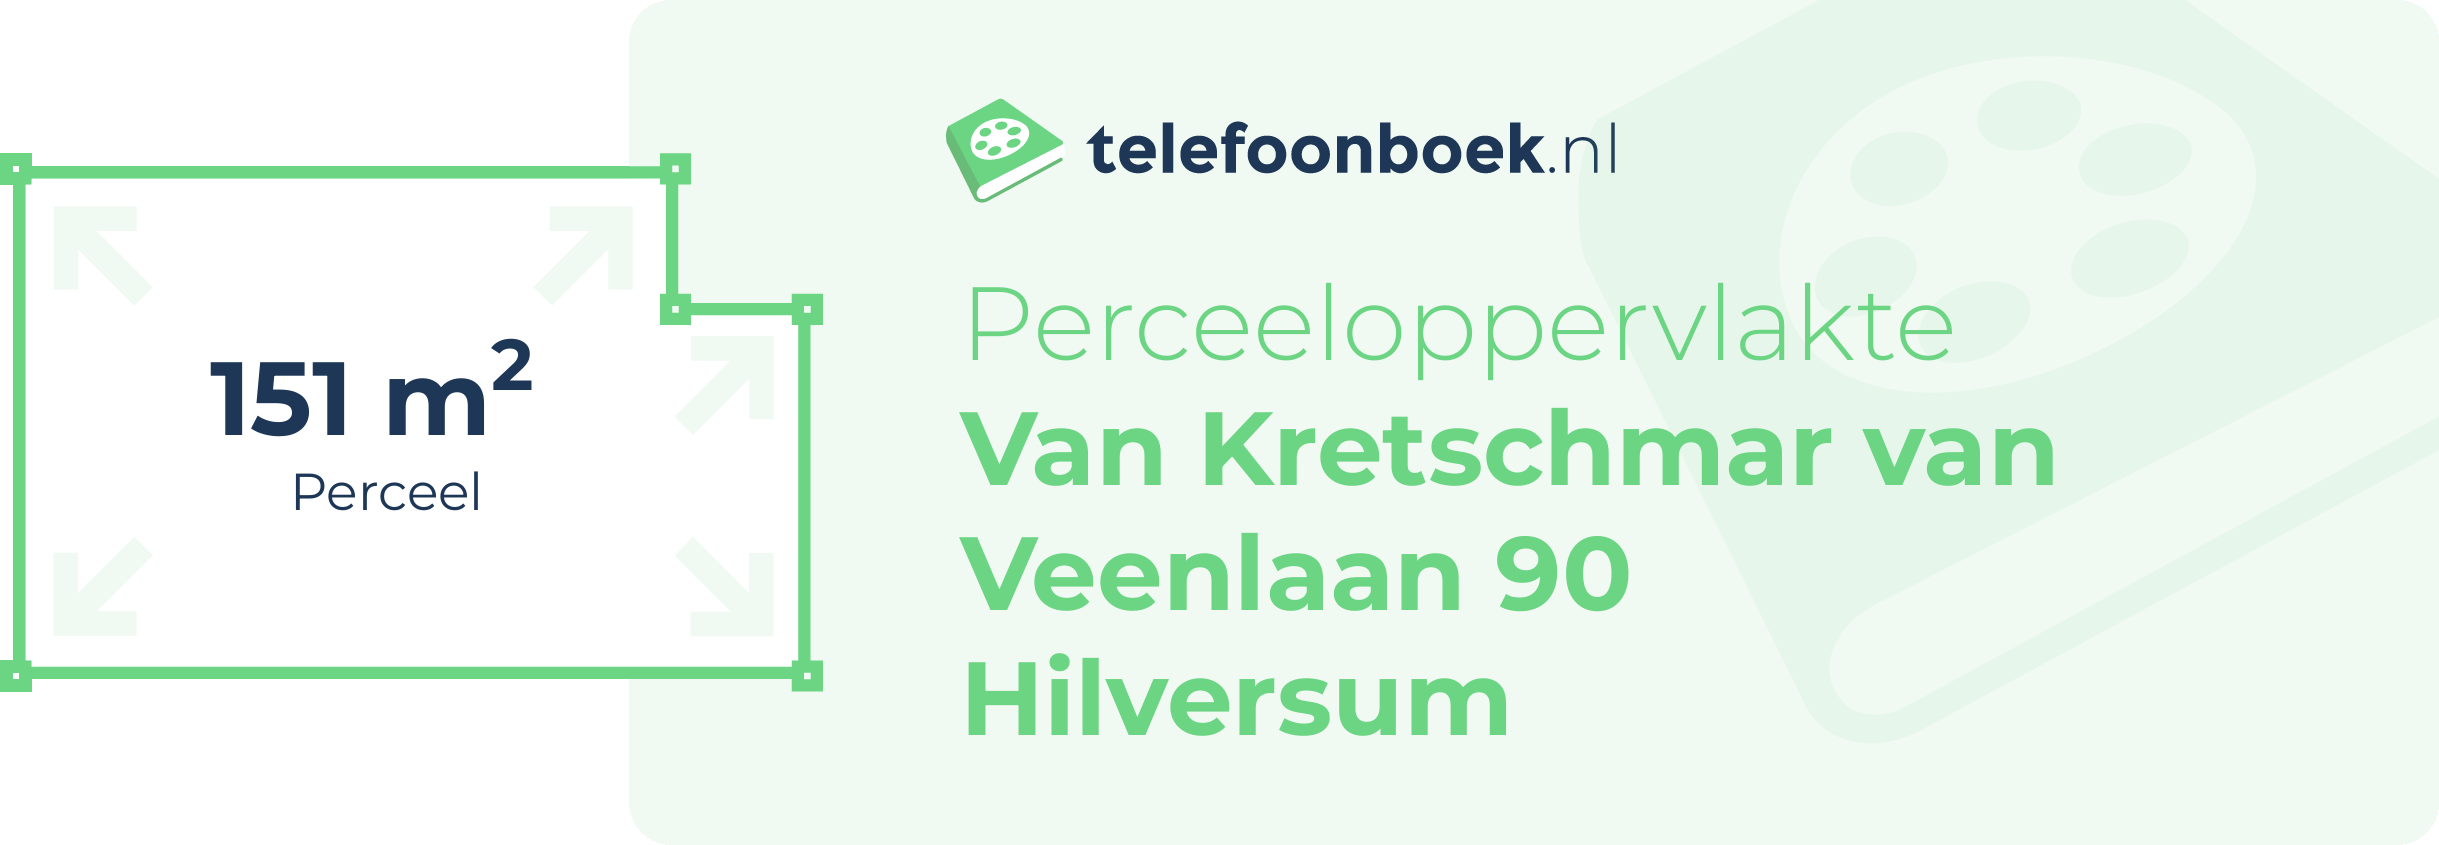 Perceeloppervlakte Van Kretschmar Van Veenlaan 90 Hilversum